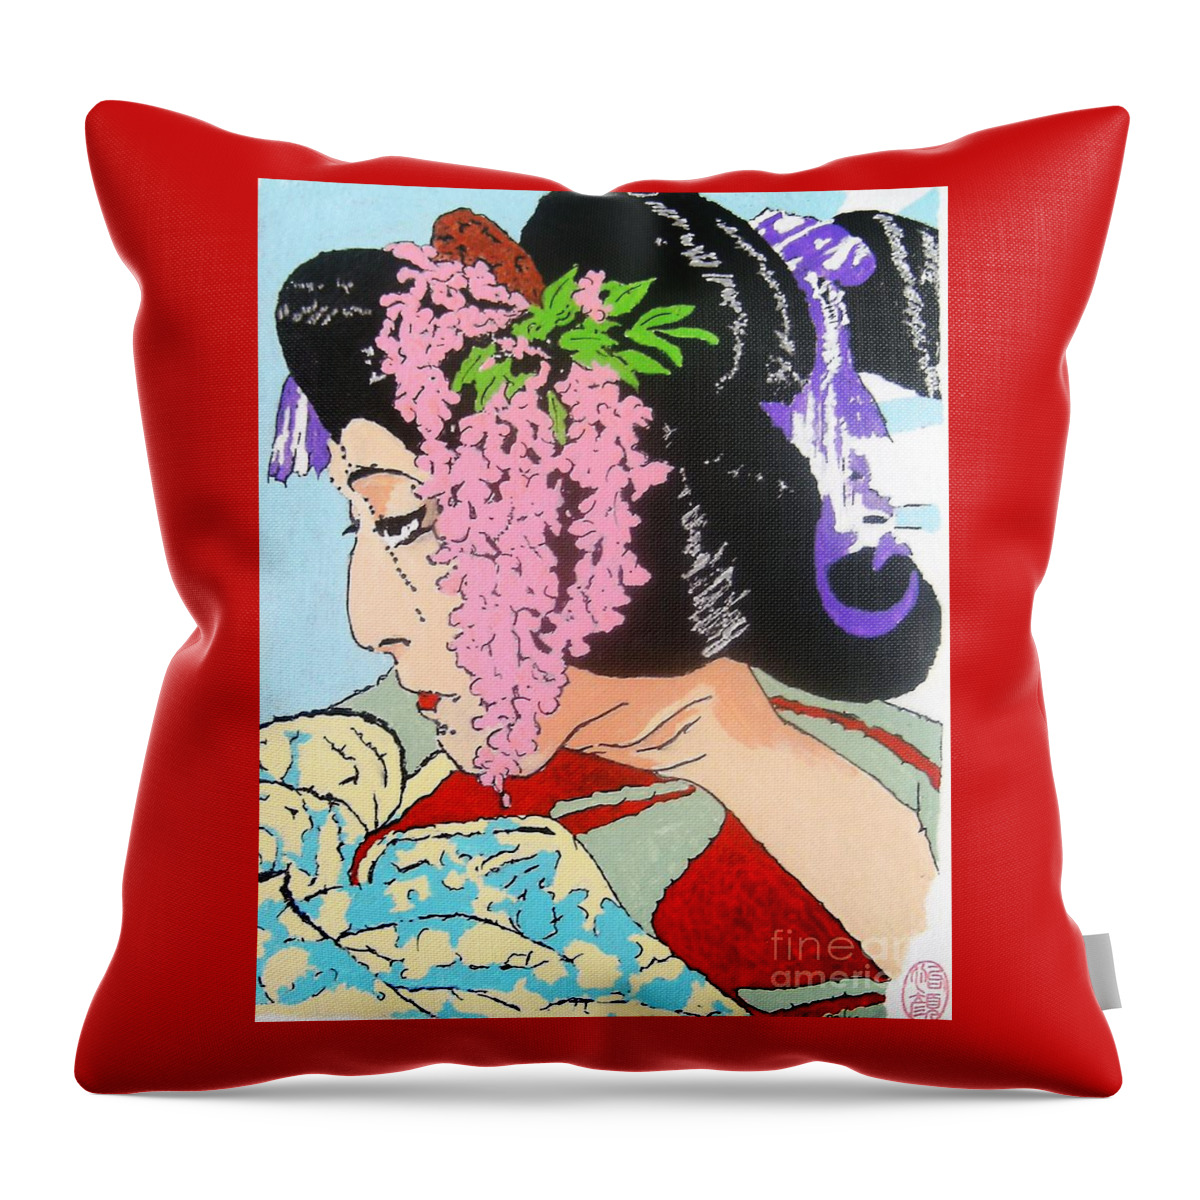 Female Throw Pillow featuring the painting Ukiyo sekai ichi by Thea Recuerdo